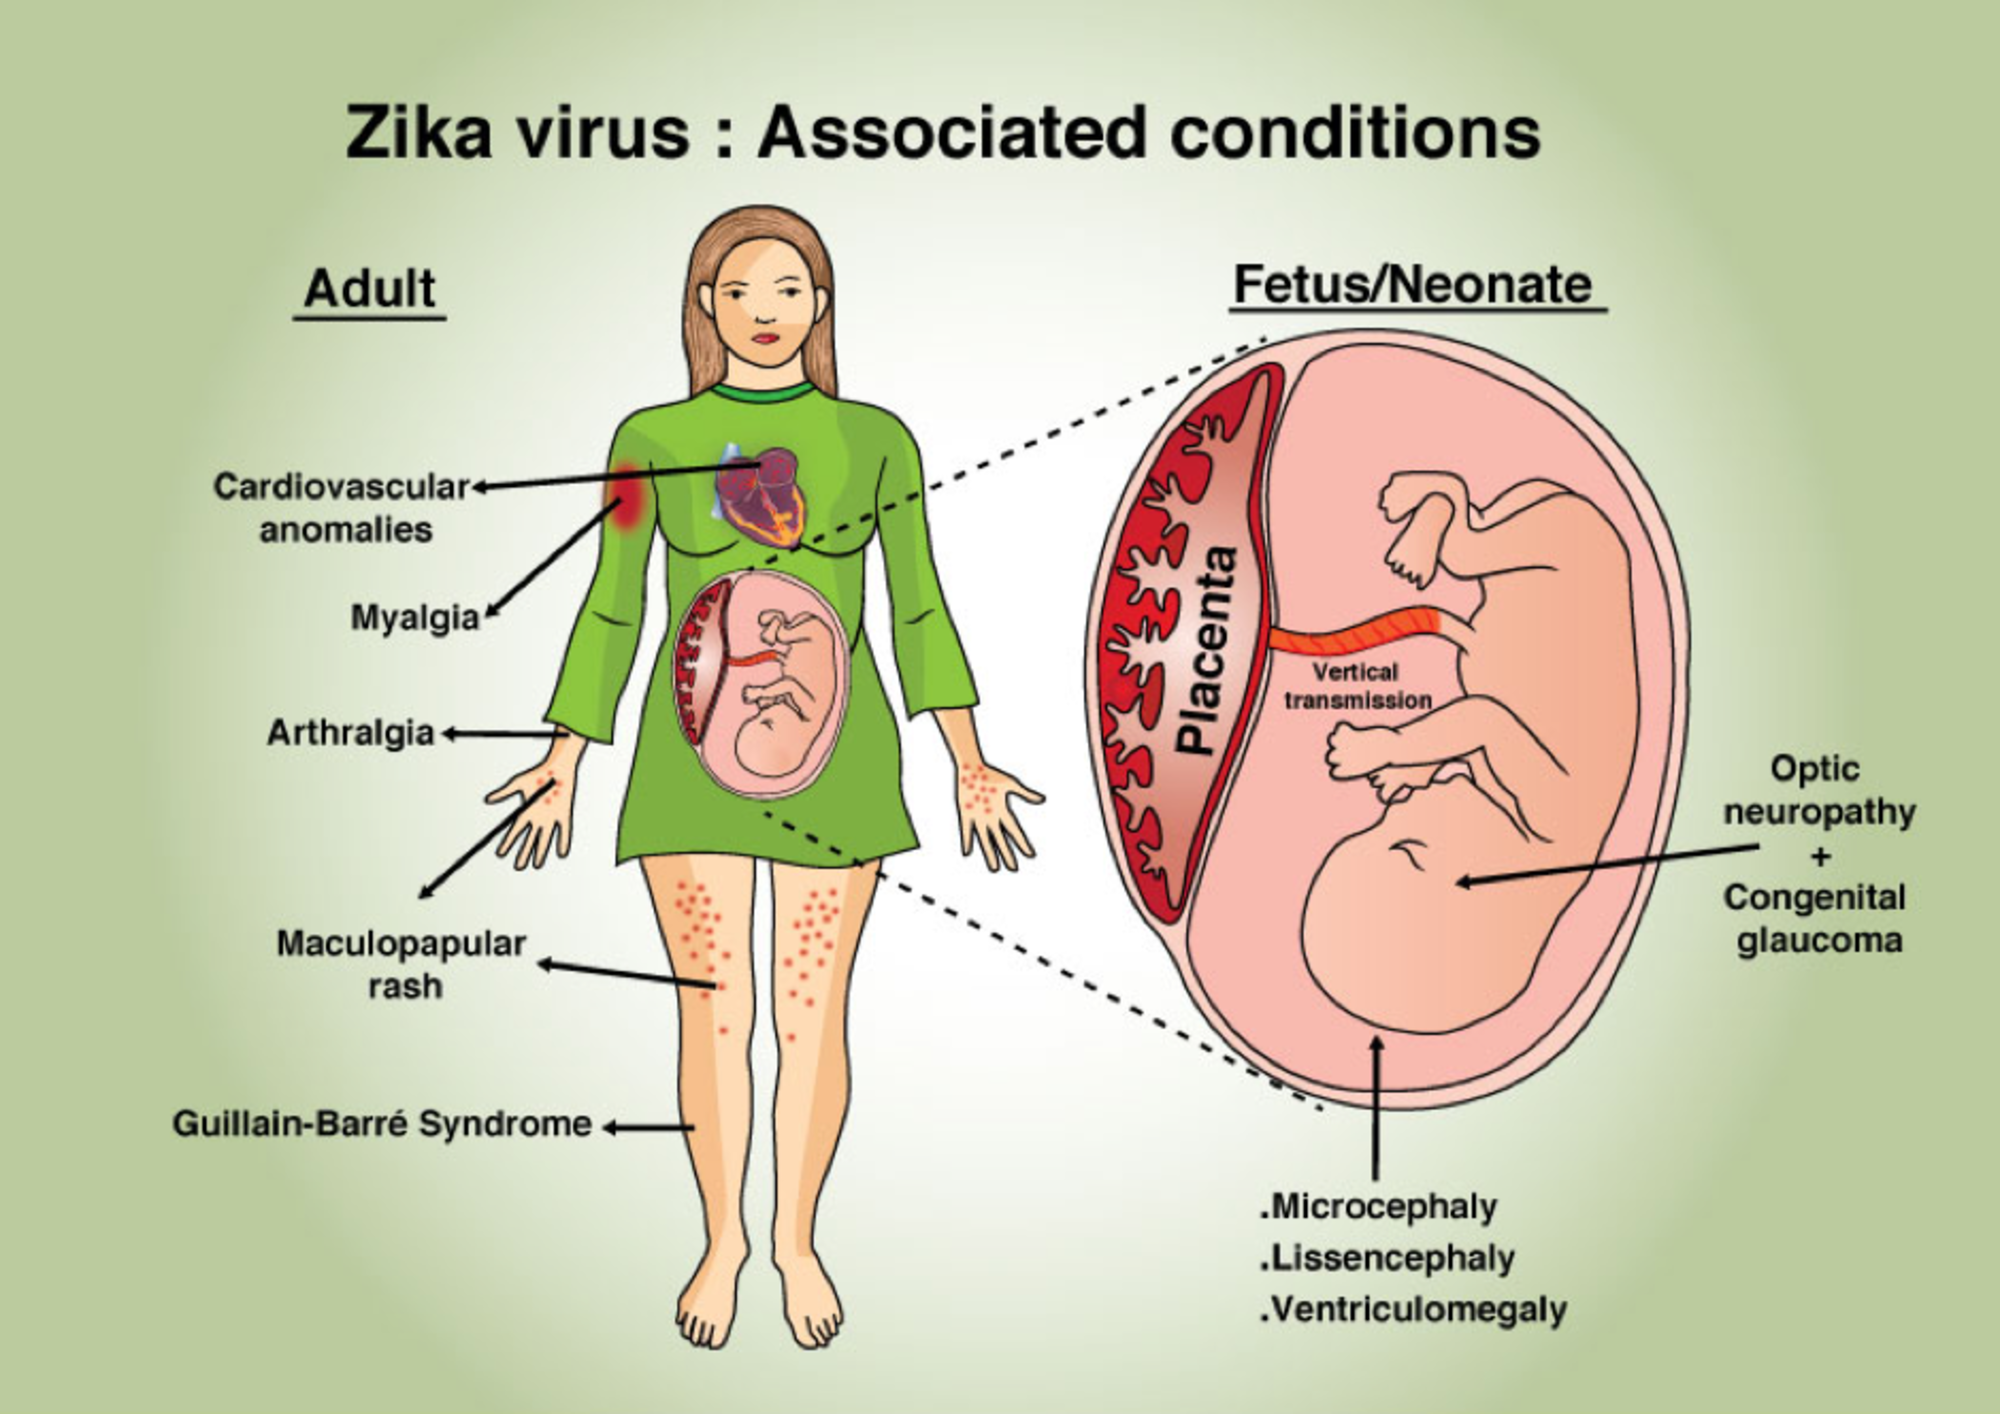 Komplikace z virové infekce Zika